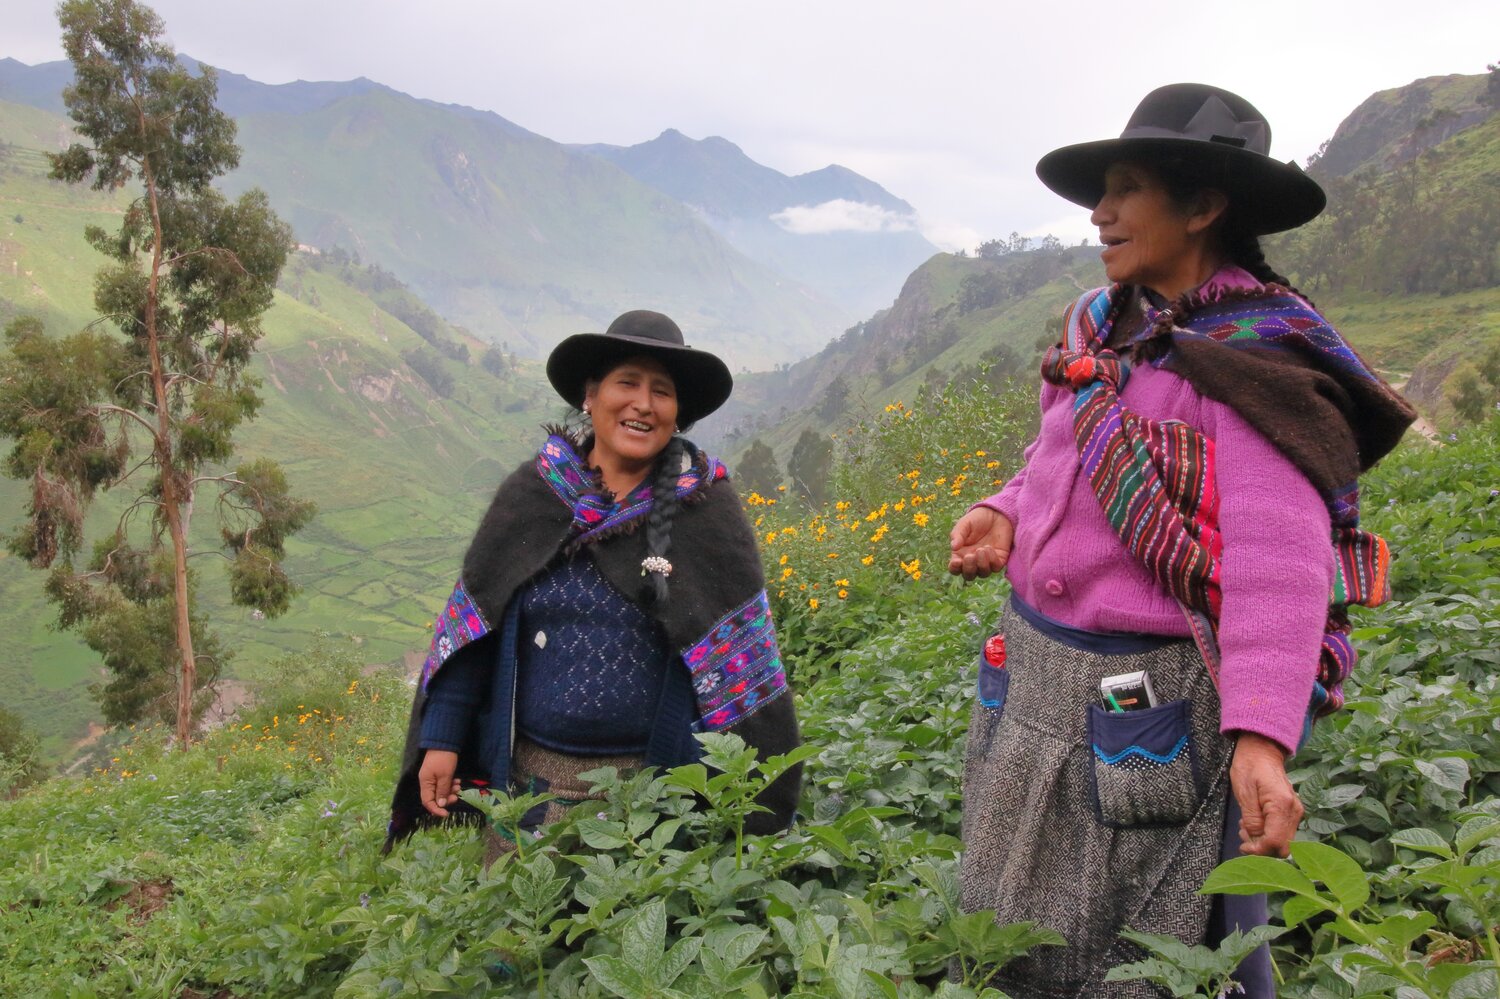 Women farmers in a highland potato field in Peru. Photo: CIP/David Duddenhoefer